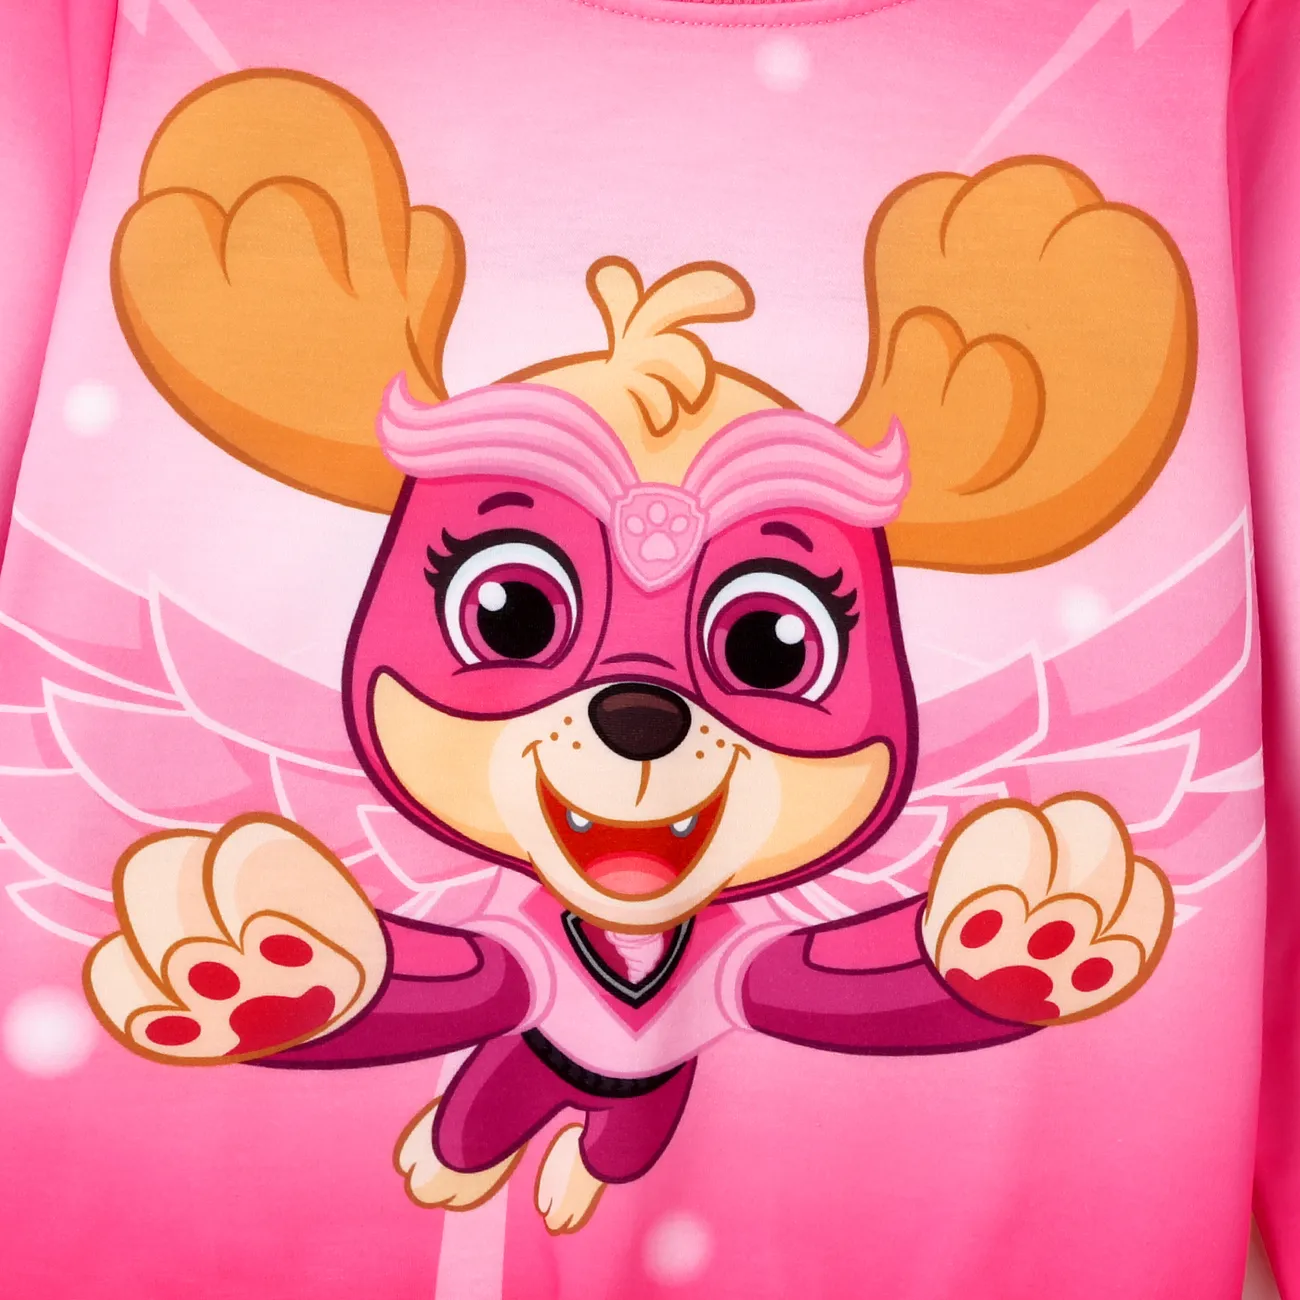 PAW Patrol Toddler Girl/Boy Character Print Pattern Long-sleeve Sweatshirt Pink big image 1